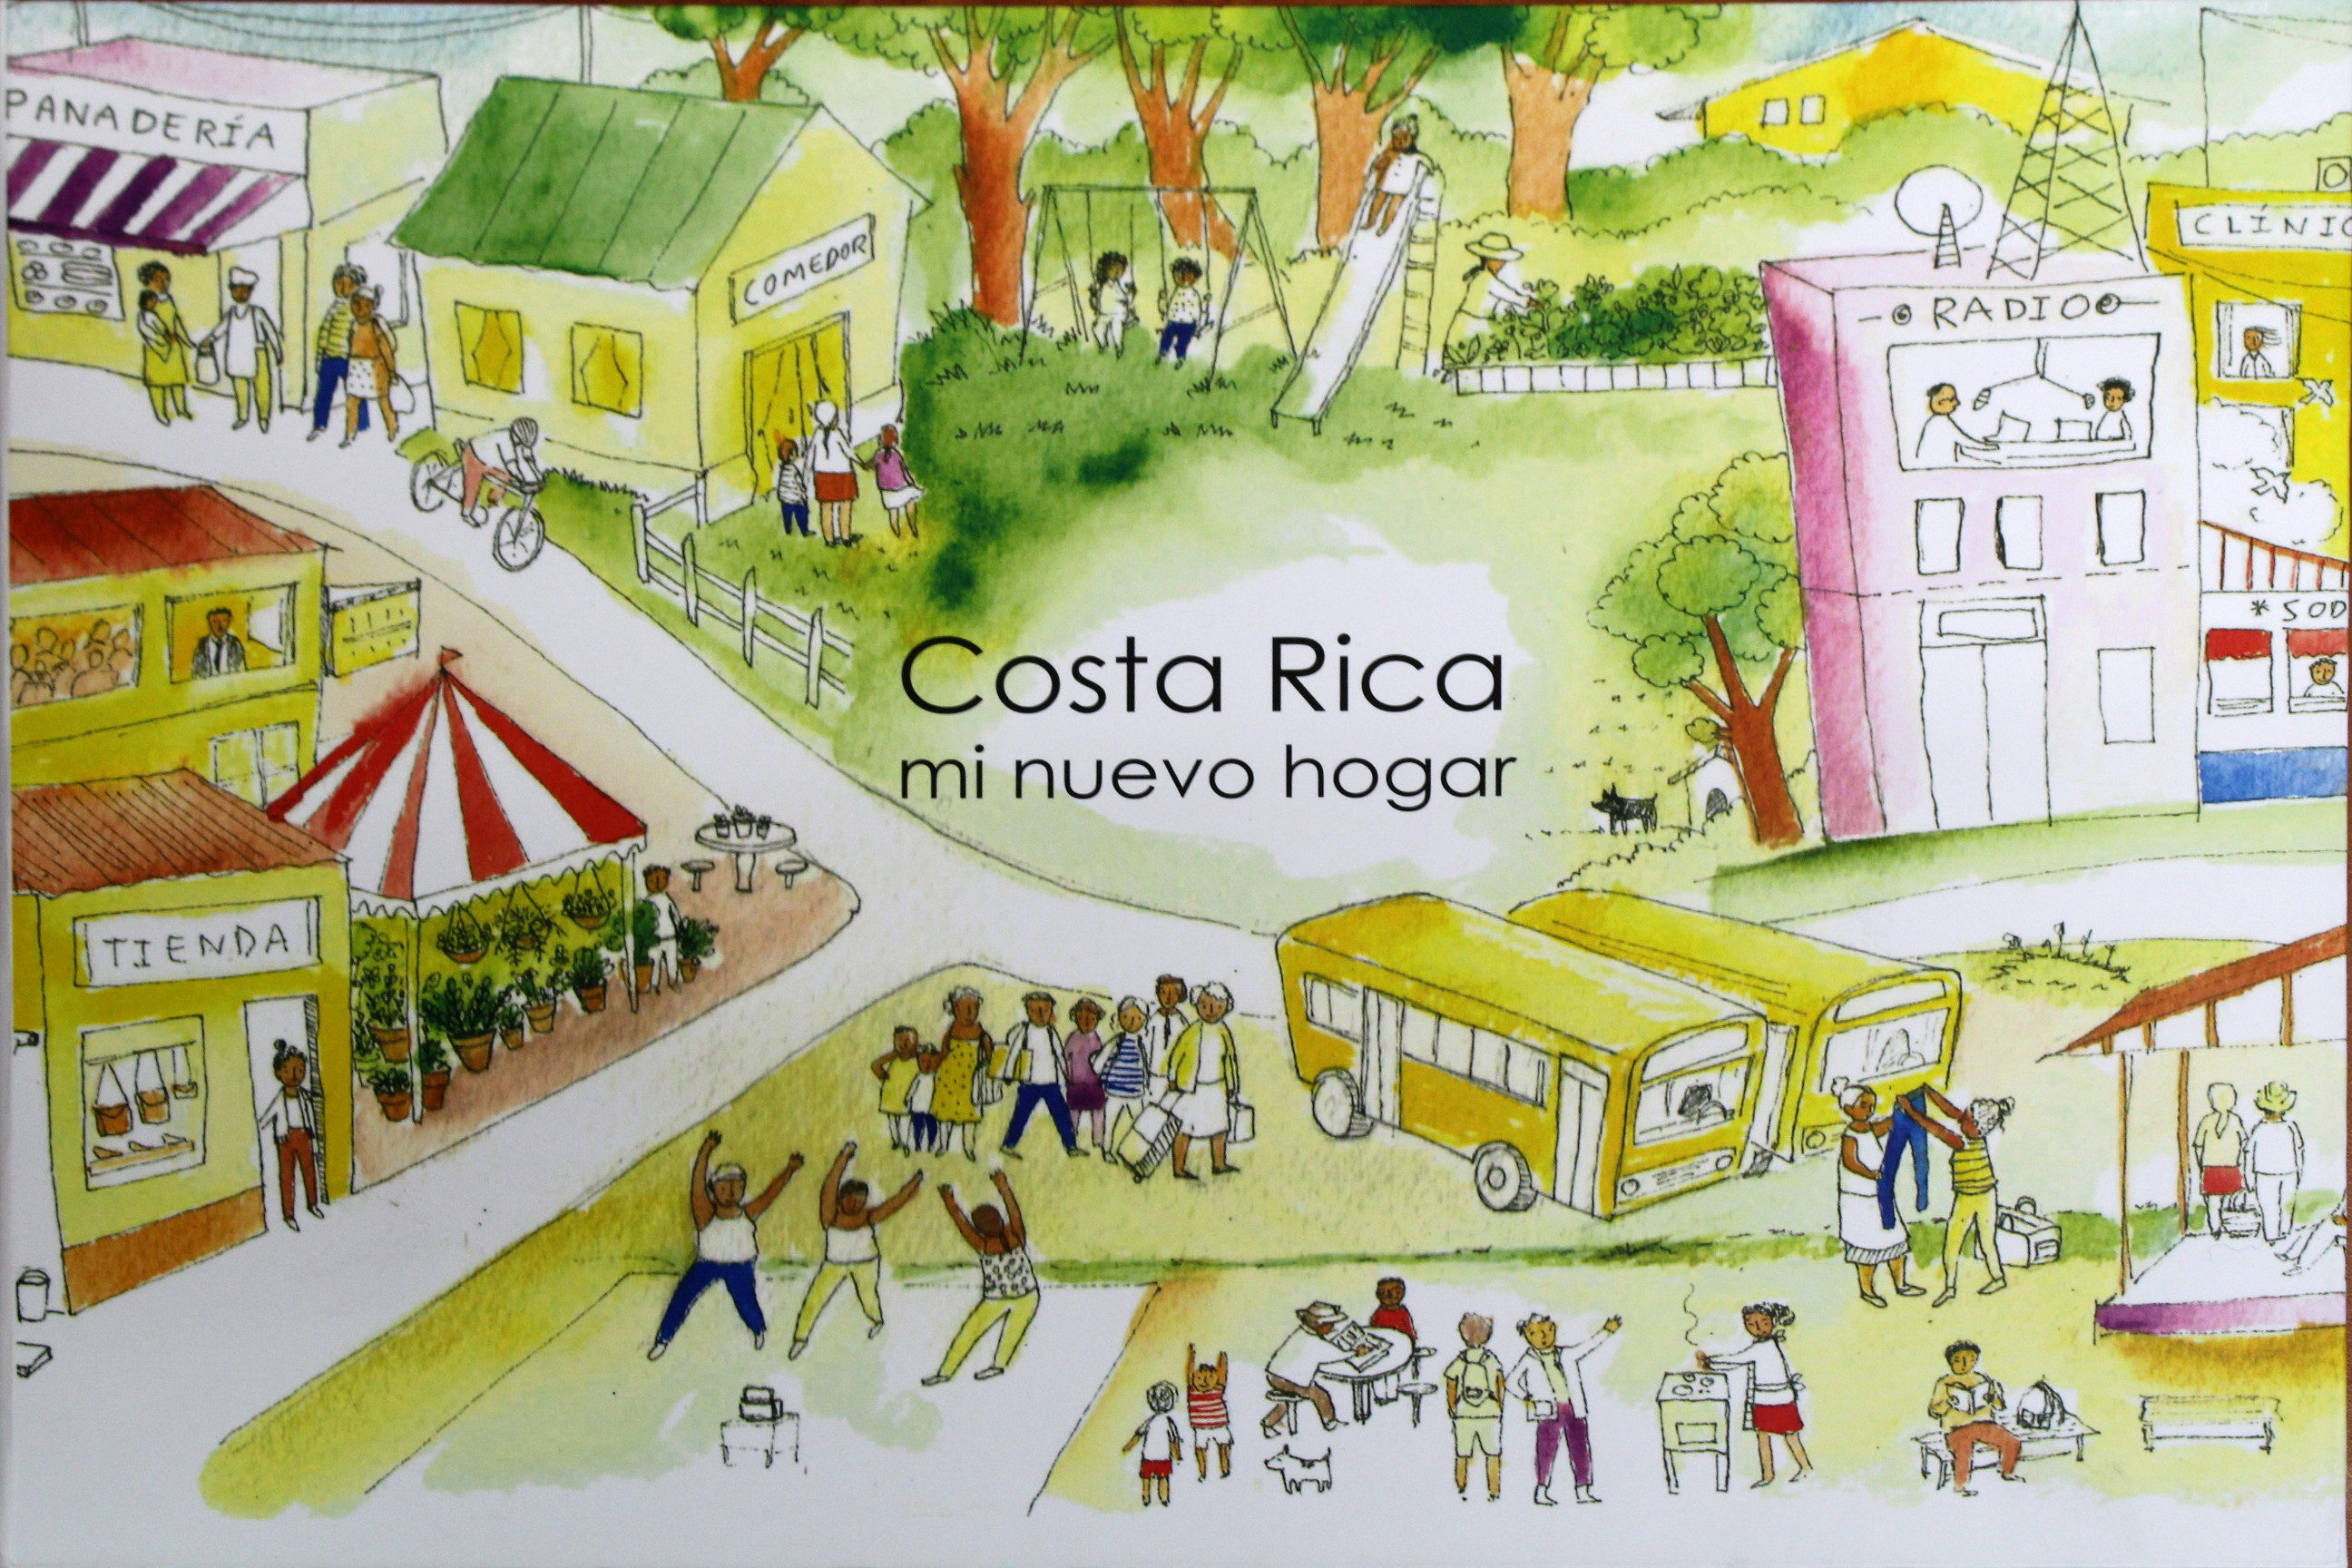 Once historias  de refugiados que residen en Costa Rica, personas incorporadas a la sociedad costarricense